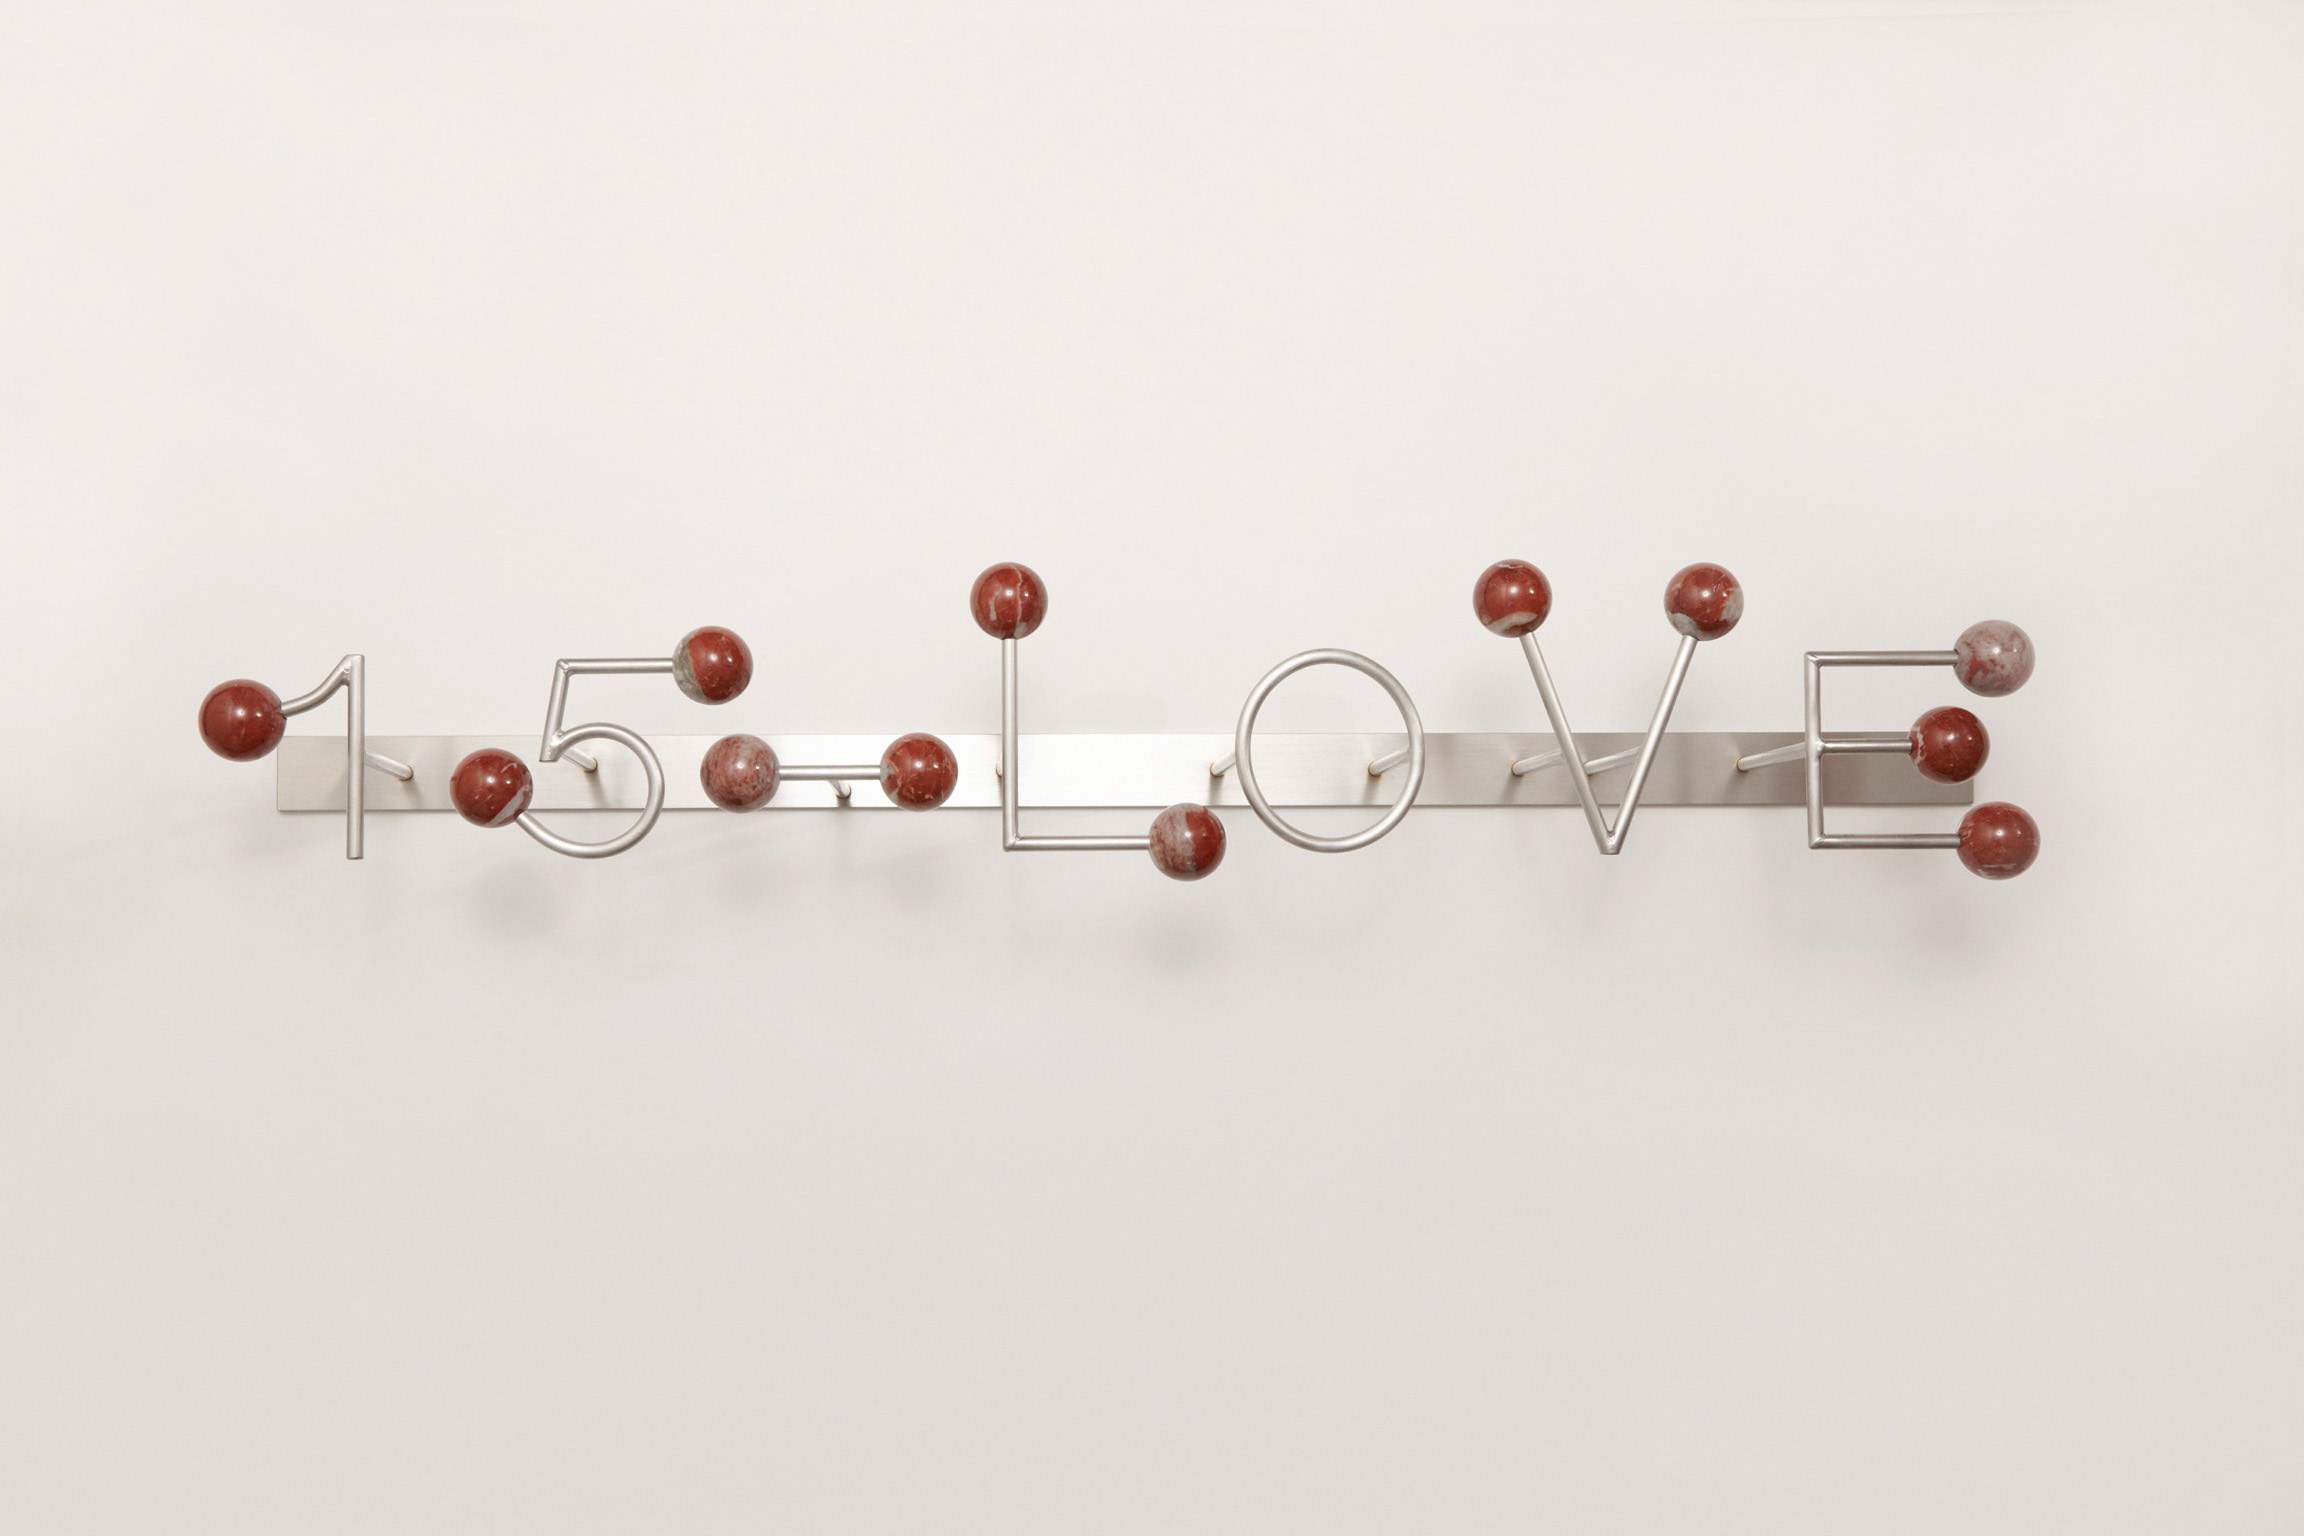 Michele Chiossi 15-LOVE, 2017 marmo rosso Francia Languedoc Classico, acciaio  95x18x16 cm macchina da musica dot punto spartito musicale ombra tennis scultura